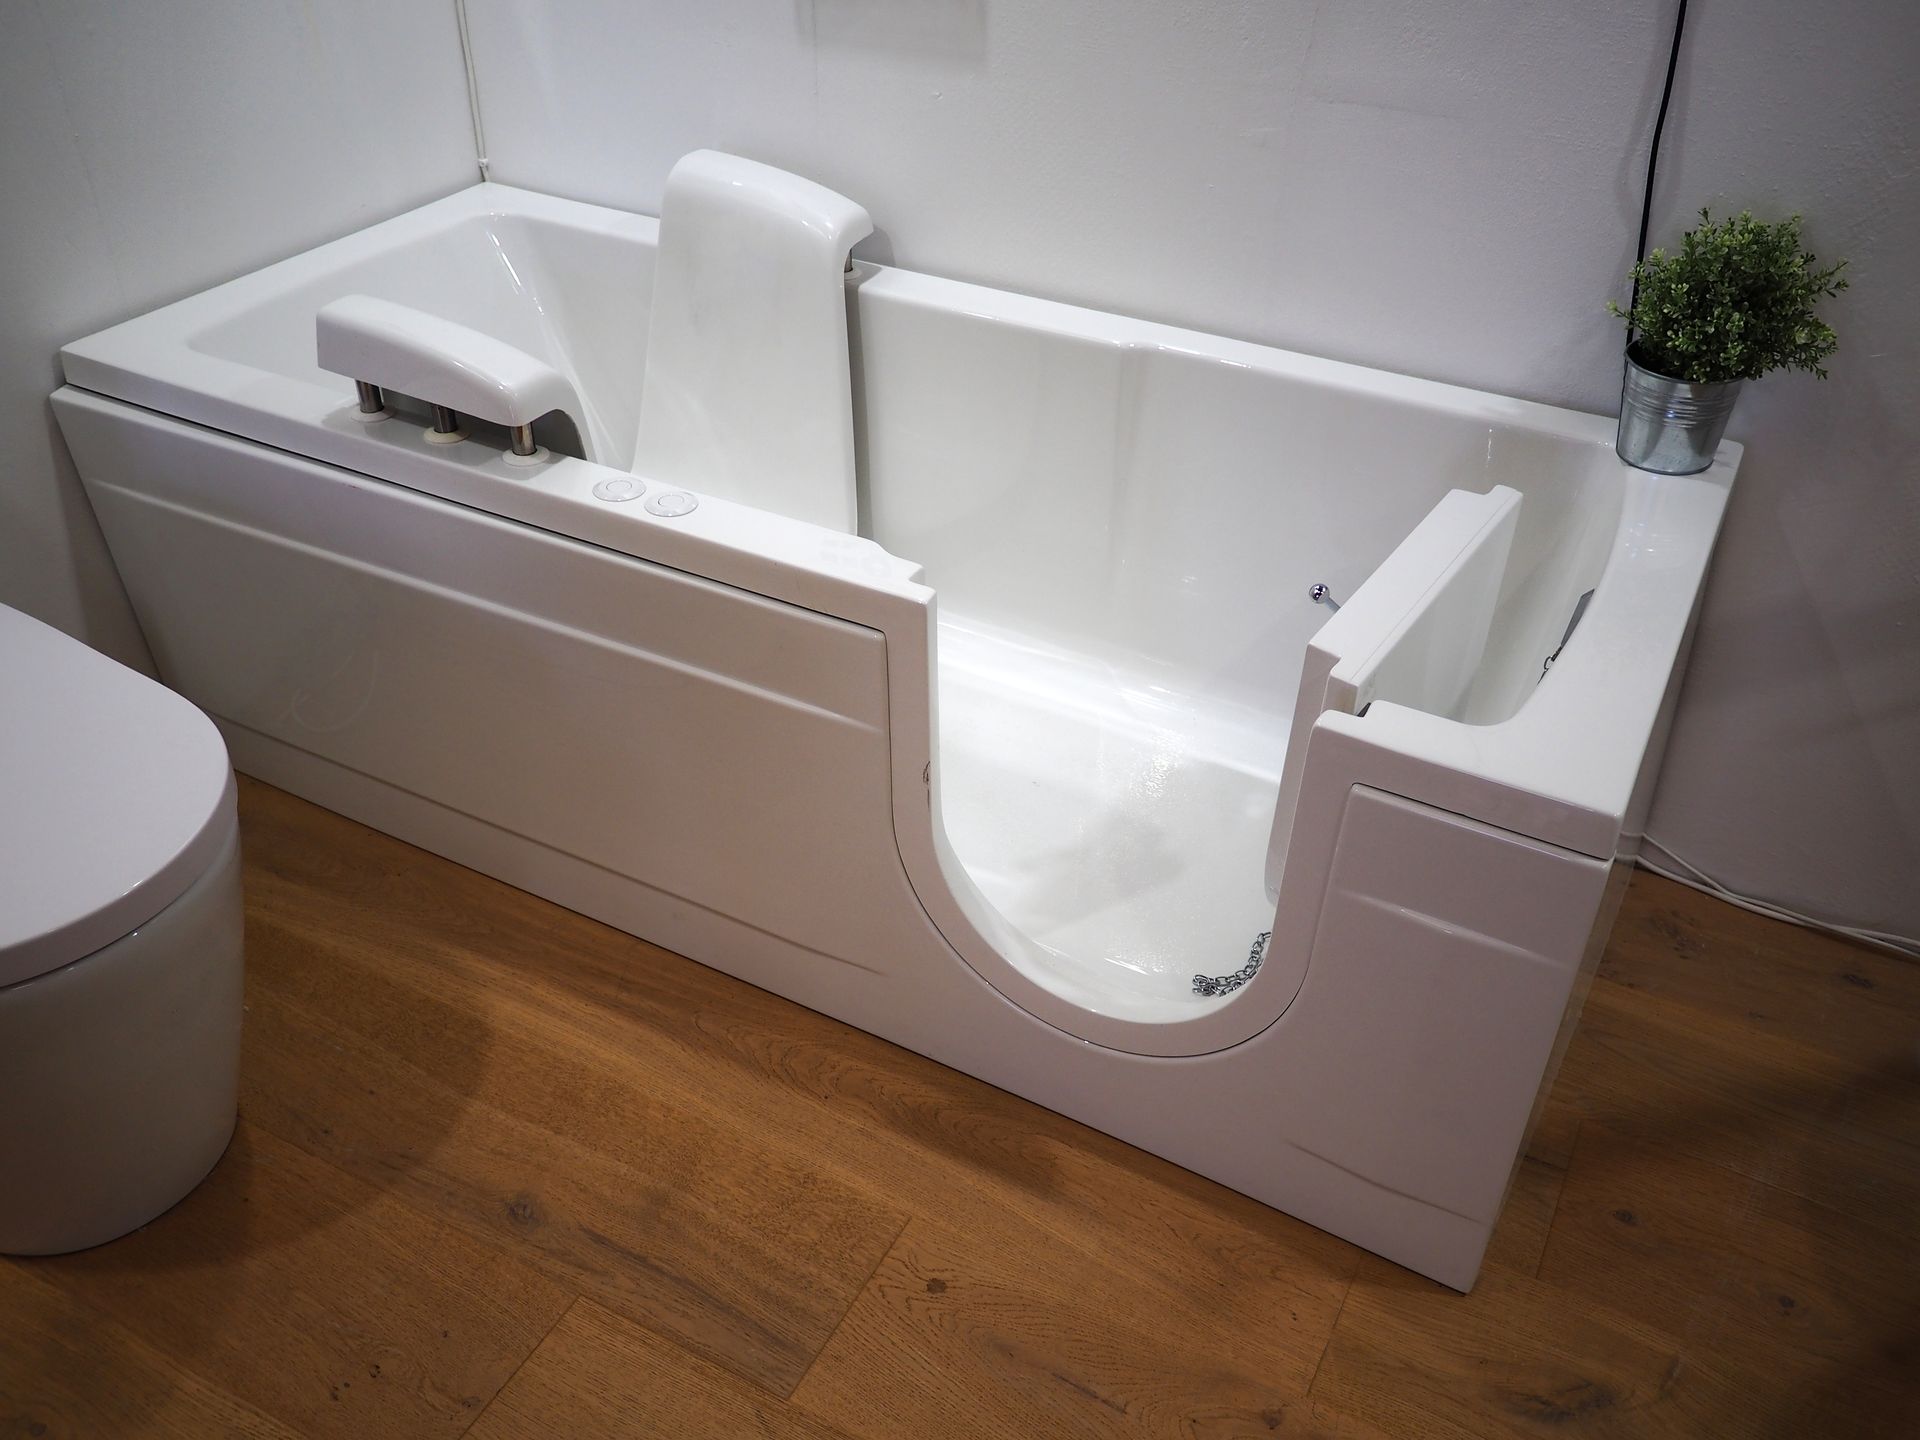 Une baignoire adaptée pour des personnes à mobilité réduite